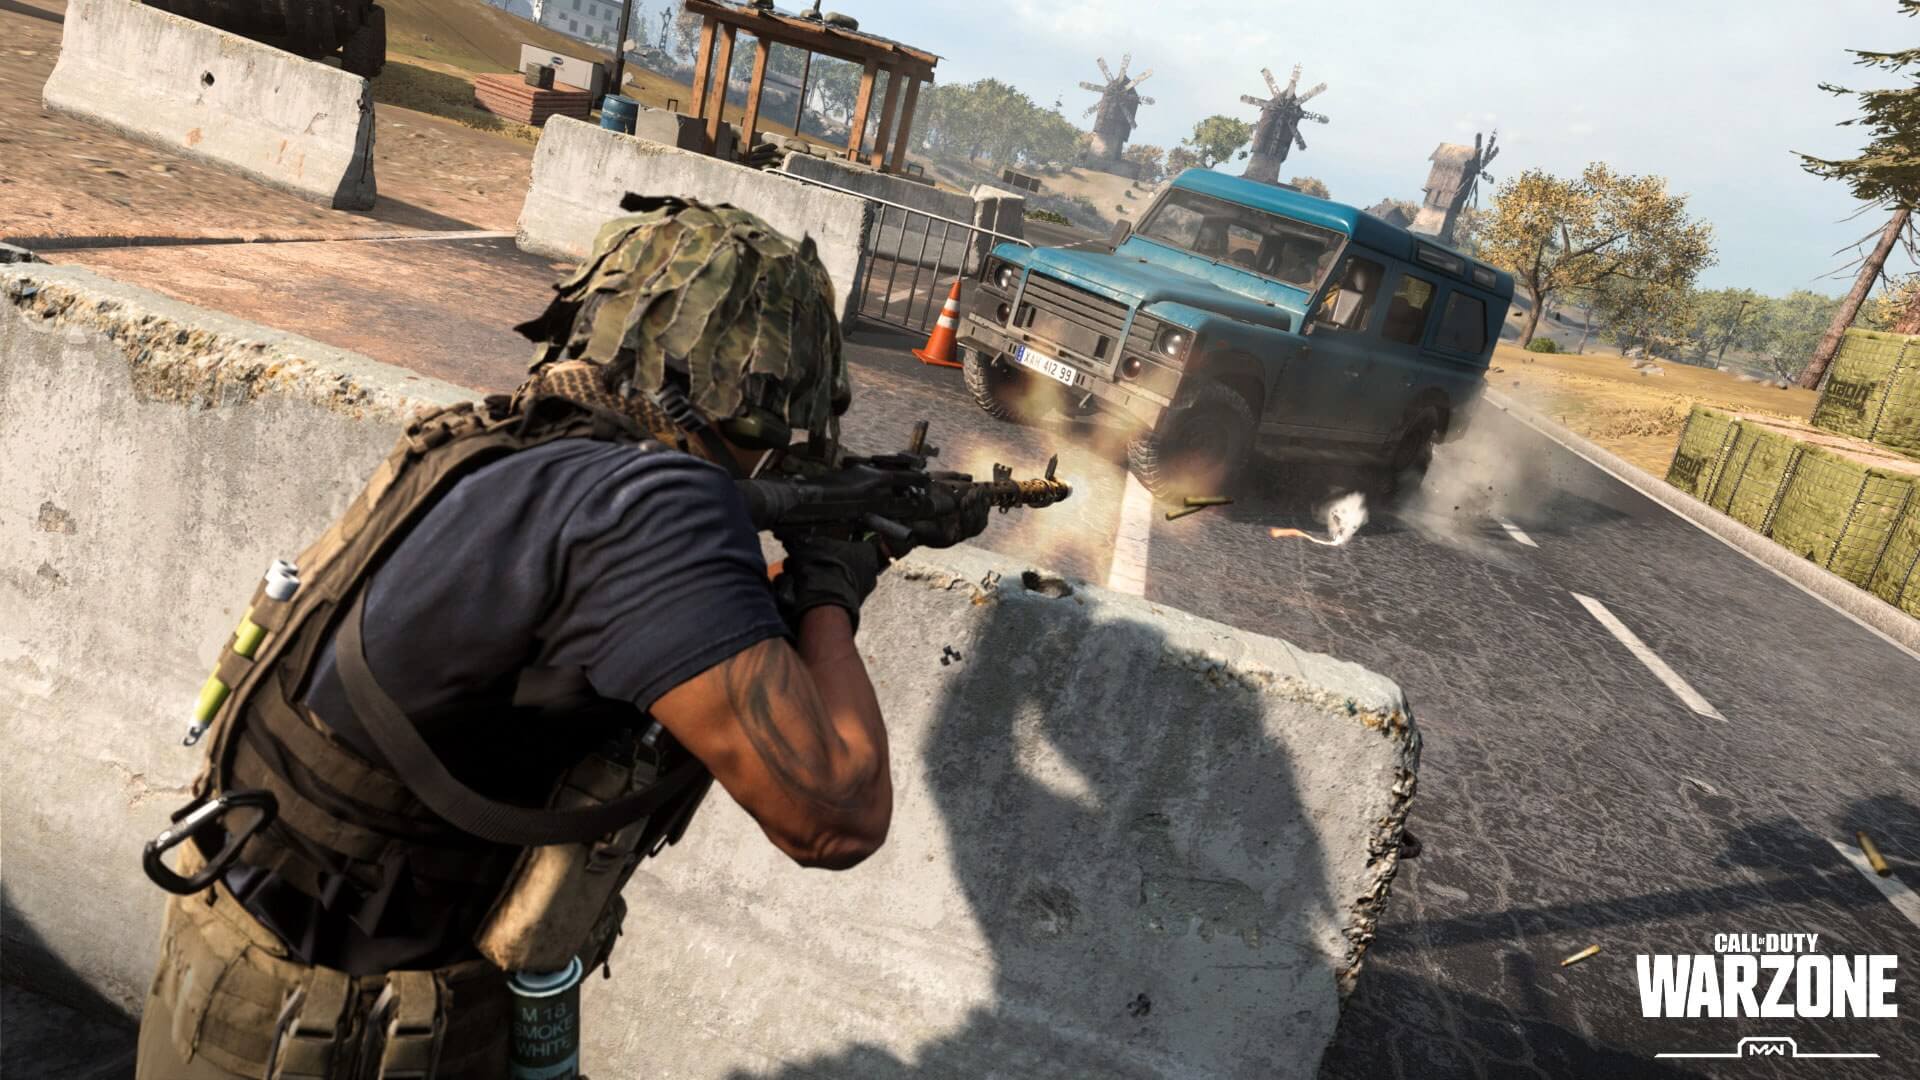  إشاعة: Call of Duty: Warzone 2.0 تحصل على خريطة Resurgance في موسمها الثاني